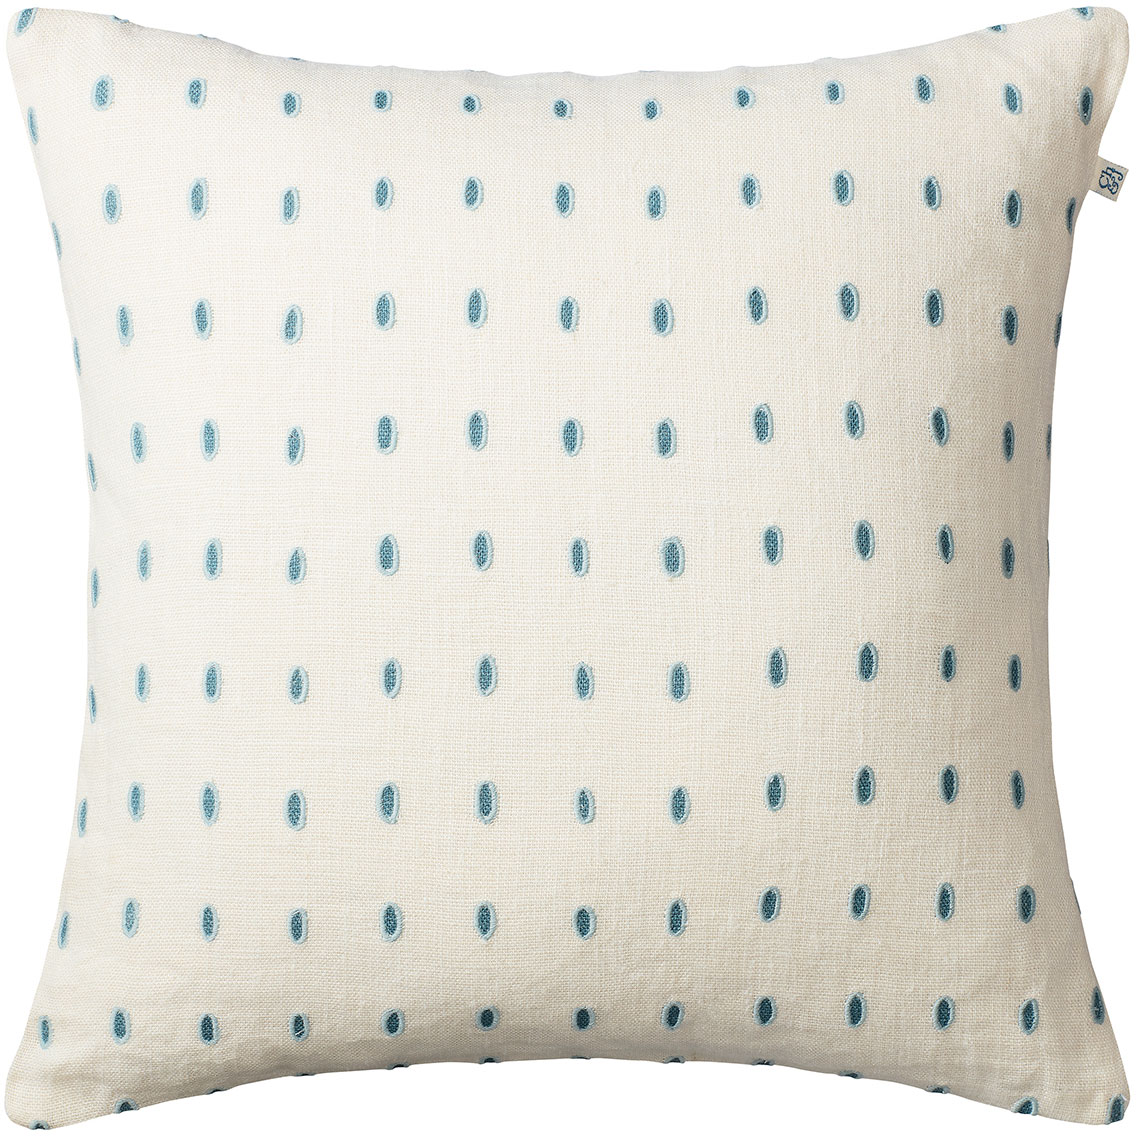 샤트왈앤욘손 dr_op 쿠션 커버 오프 화이트 / Heaven 블루 / Aqua 50x50 cm Chhatwal & Jonsson Drop Cushion Cover Off White / Heaven Blue / Aqua  50x50 cm 06279